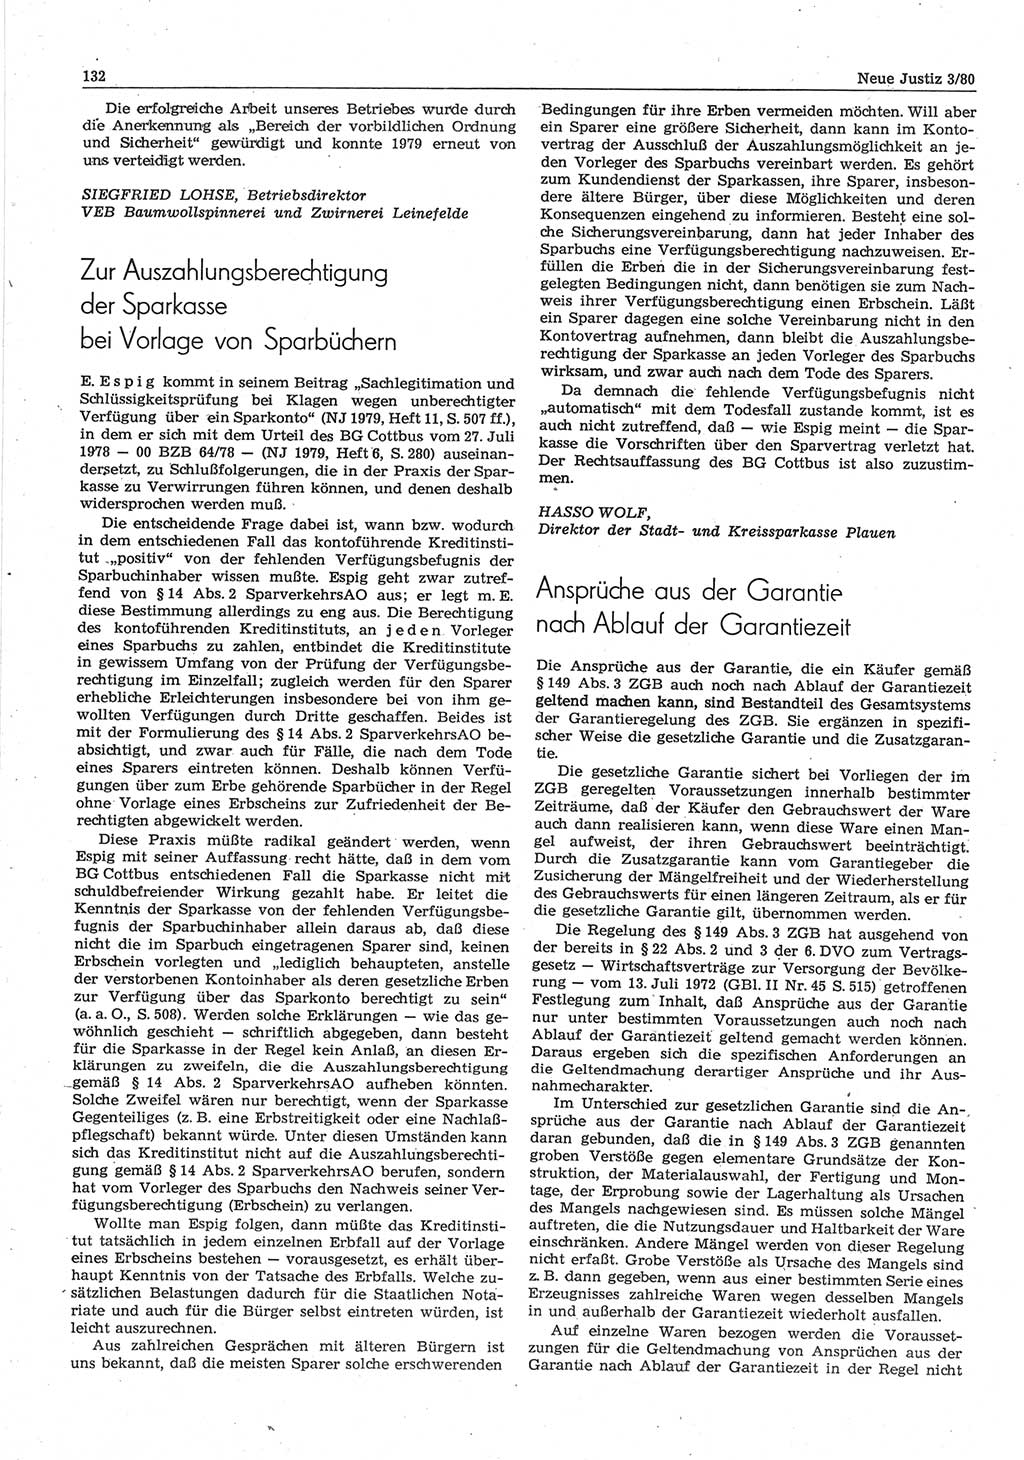 Neue Justiz (NJ), Zeitschrift für sozialistisches Recht und Gesetzlichkeit [Deutsche Demokratische Republik (DDR)], 34. Jahrgang 1980, Seite 132 (NJ DDR 1980, S. 132)